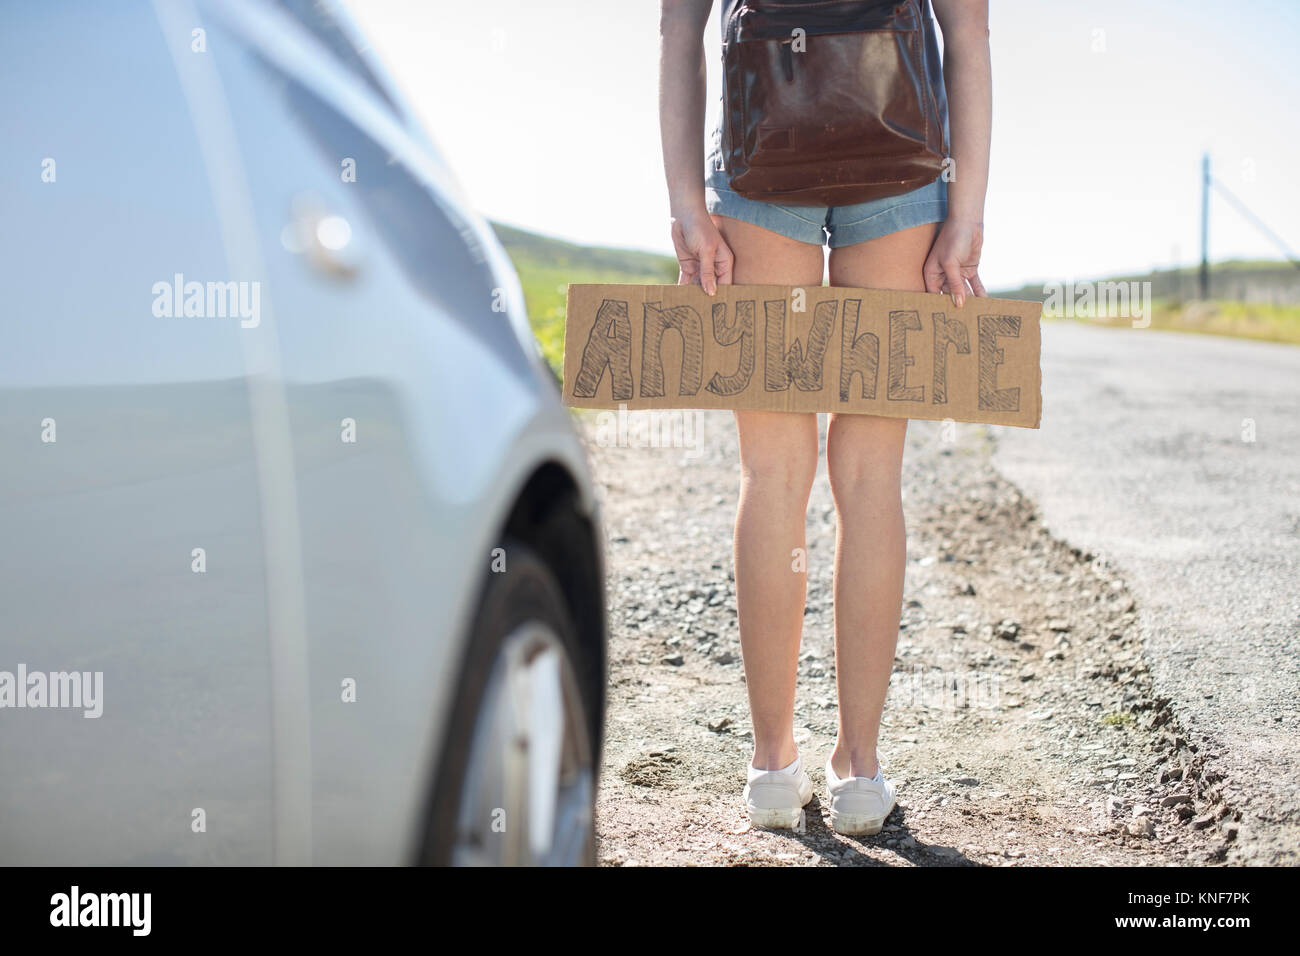 Giovane donna in piedi accanto a AUTO, azienda sollevatore-escursionismo cartello che diceva "ovunque", sezione bassa Foto Stock